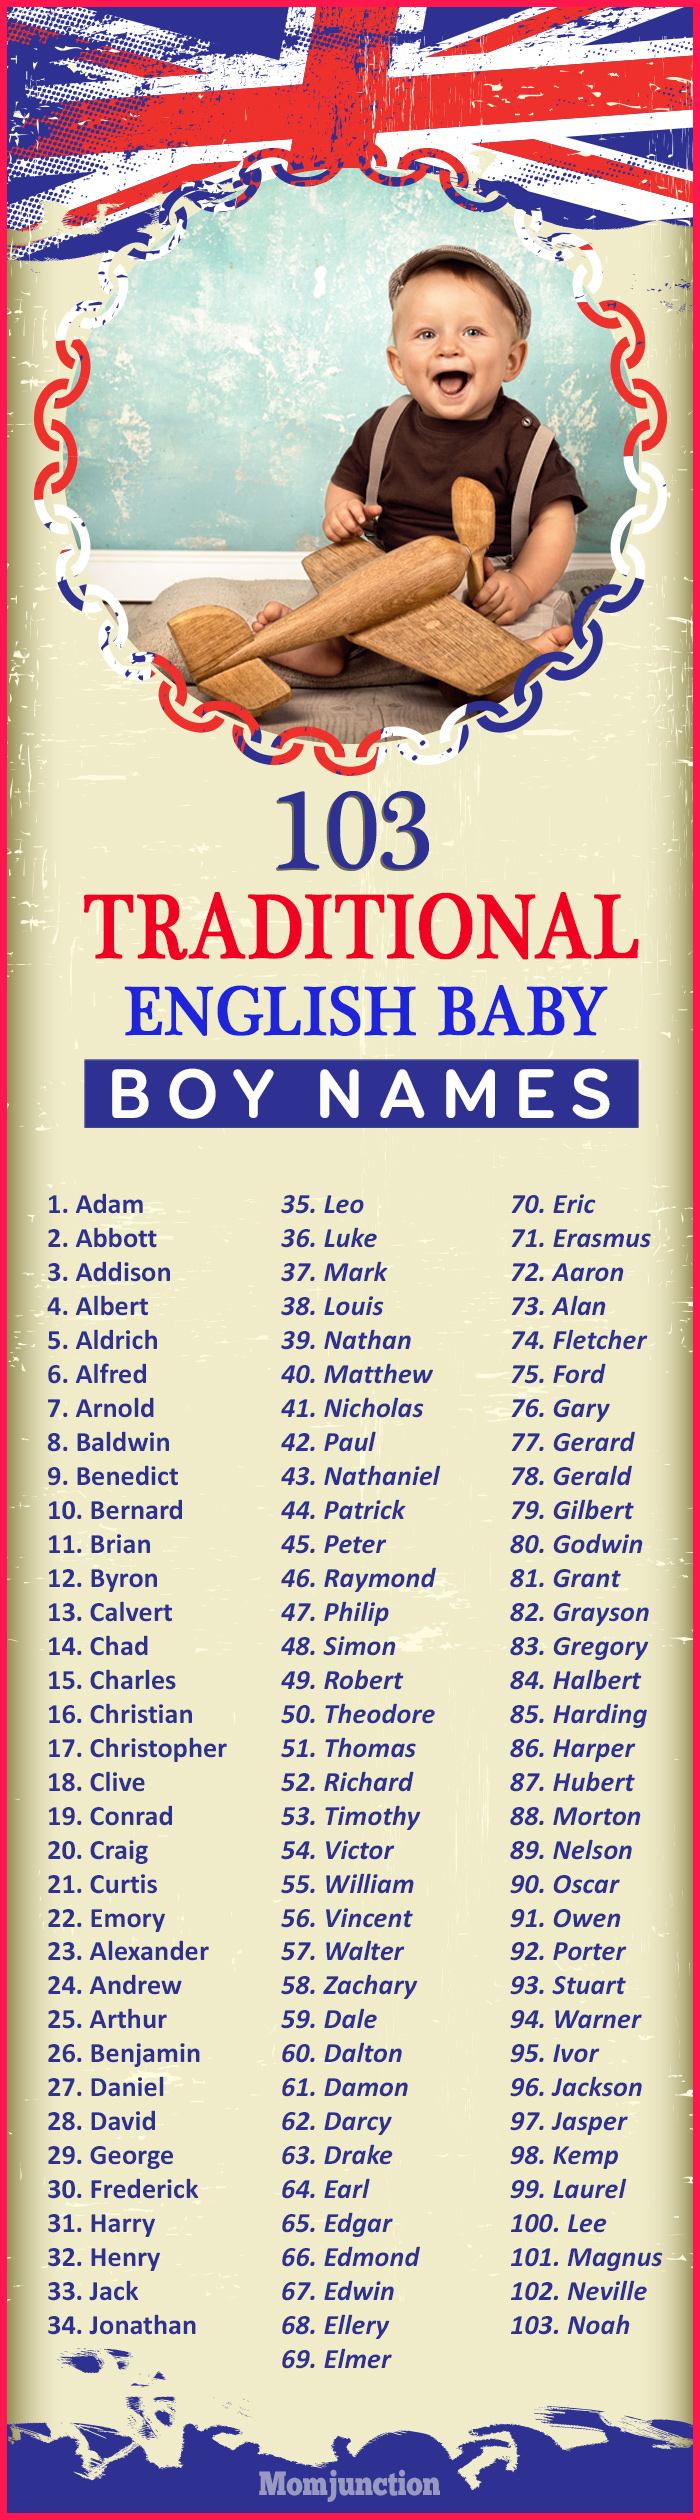 Boys Names